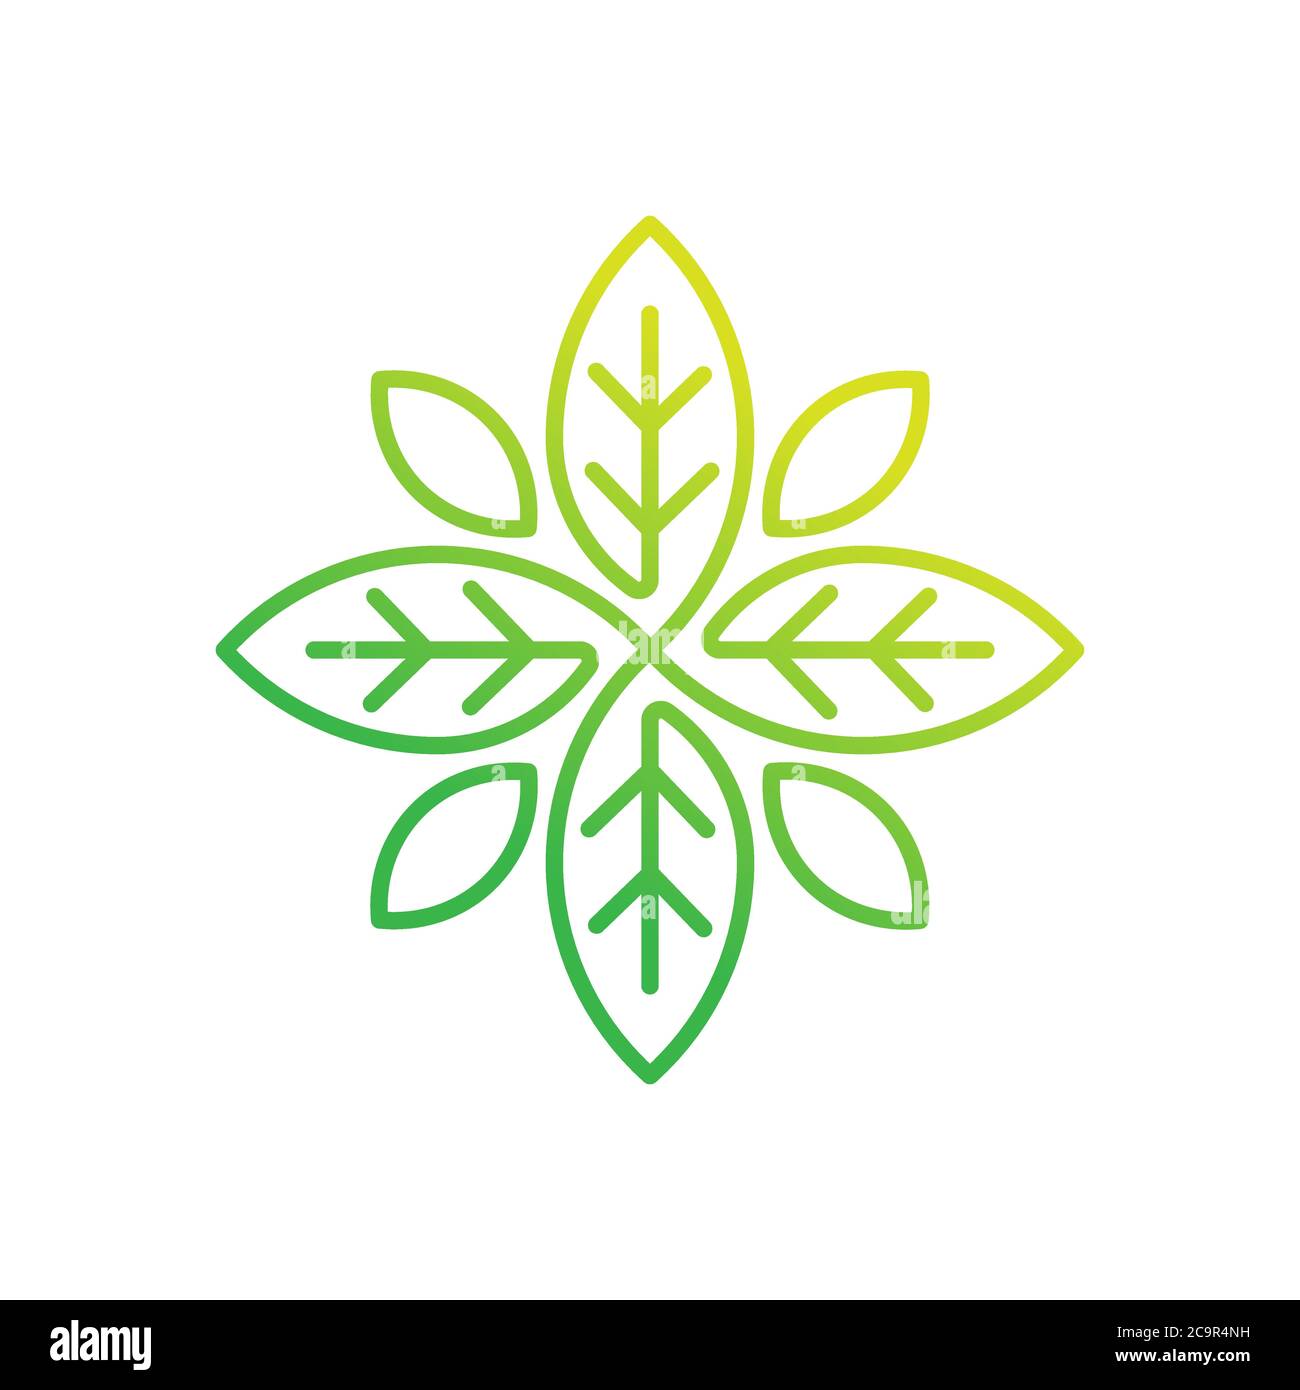 Illustration vectorielle du logo feuille. Résumé vecteur du logo feuille dans un concept de design créatif pour la nature, l'agriculture et les activités agricoles. Logo Tree Leaf, Illustration de Vecteur